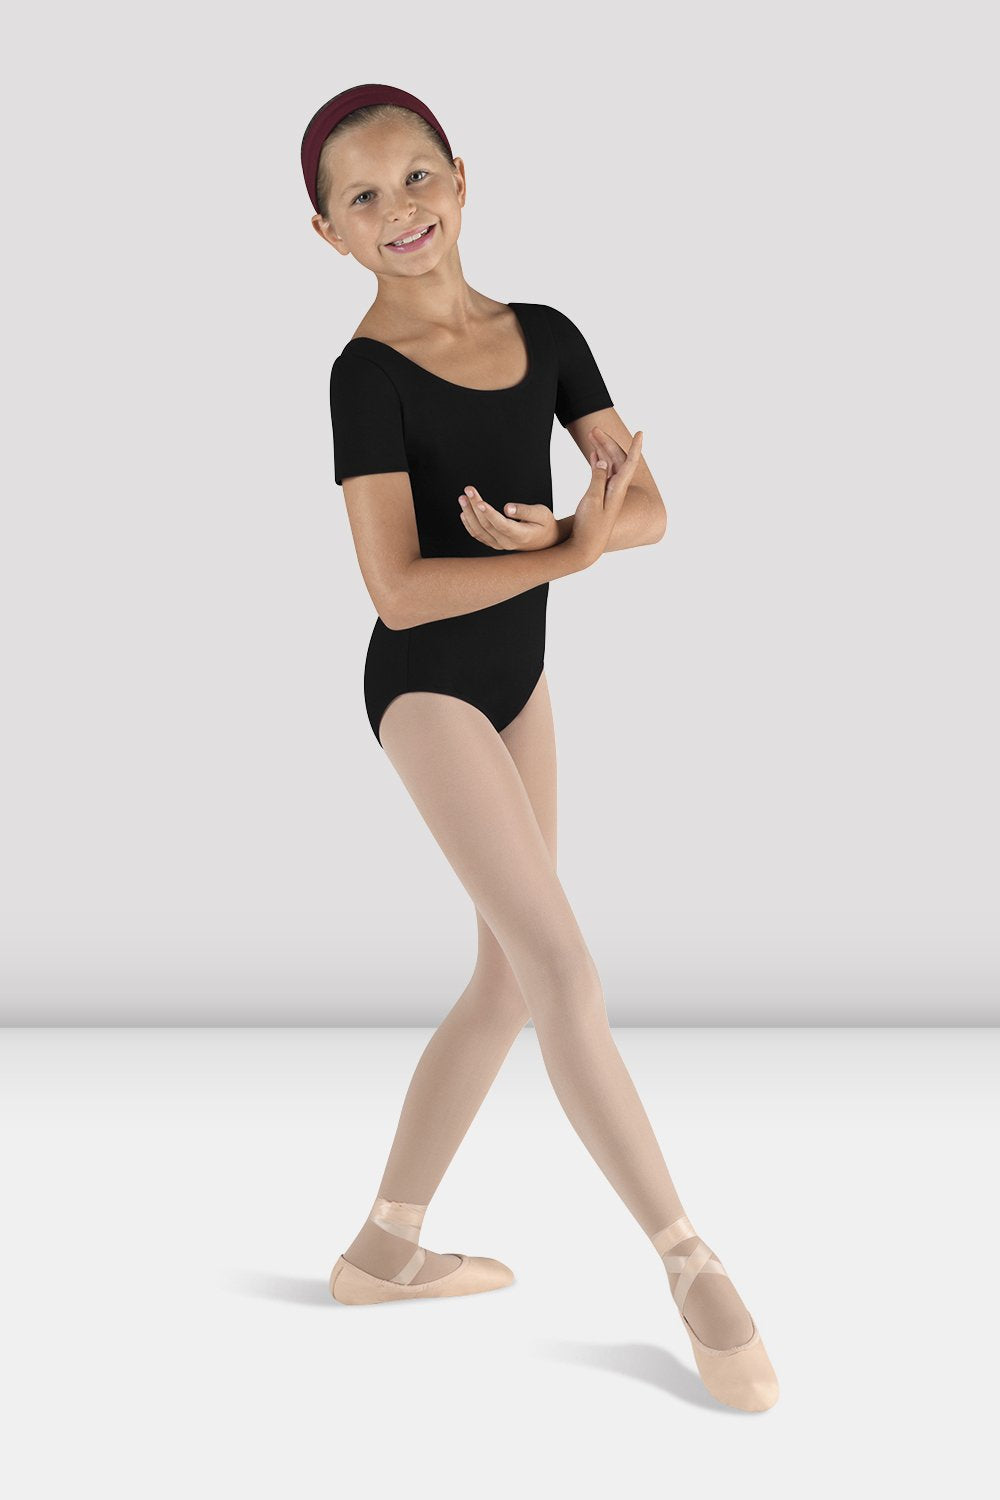 Maillot danza niña sin mangas - Ropa de ballet para niña